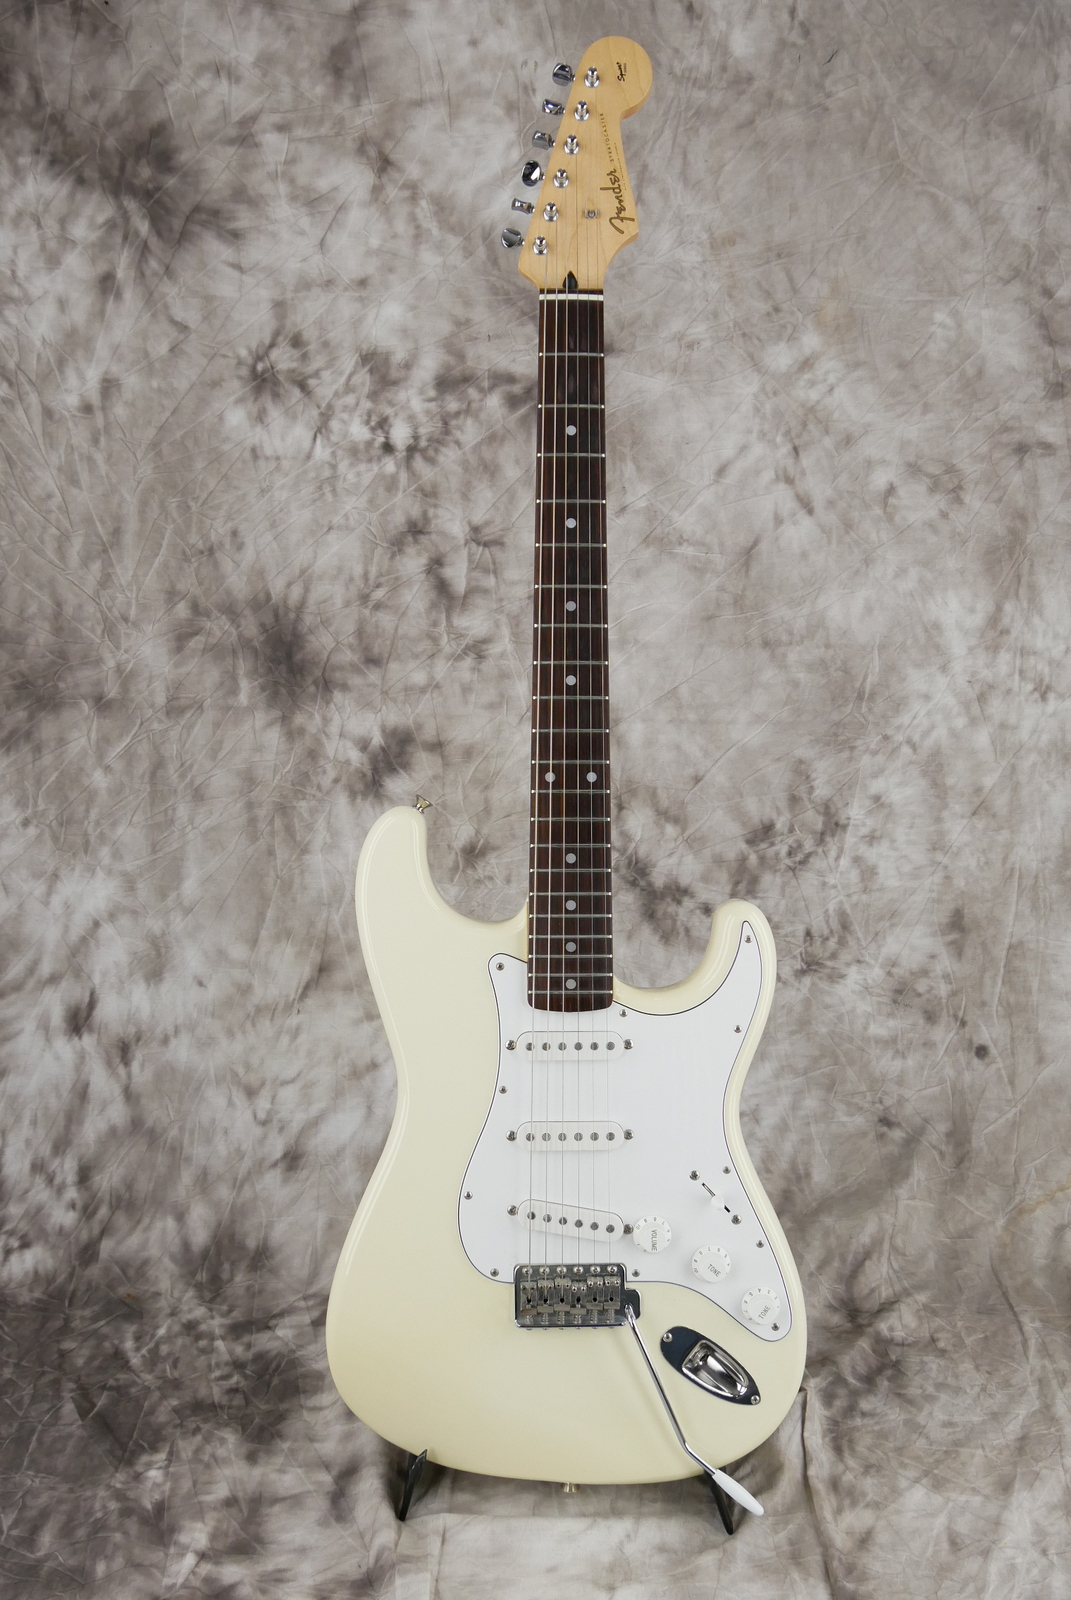 Fender_Stratocaster_Squier_series_Japan_olympic_white_1993-001.JPG